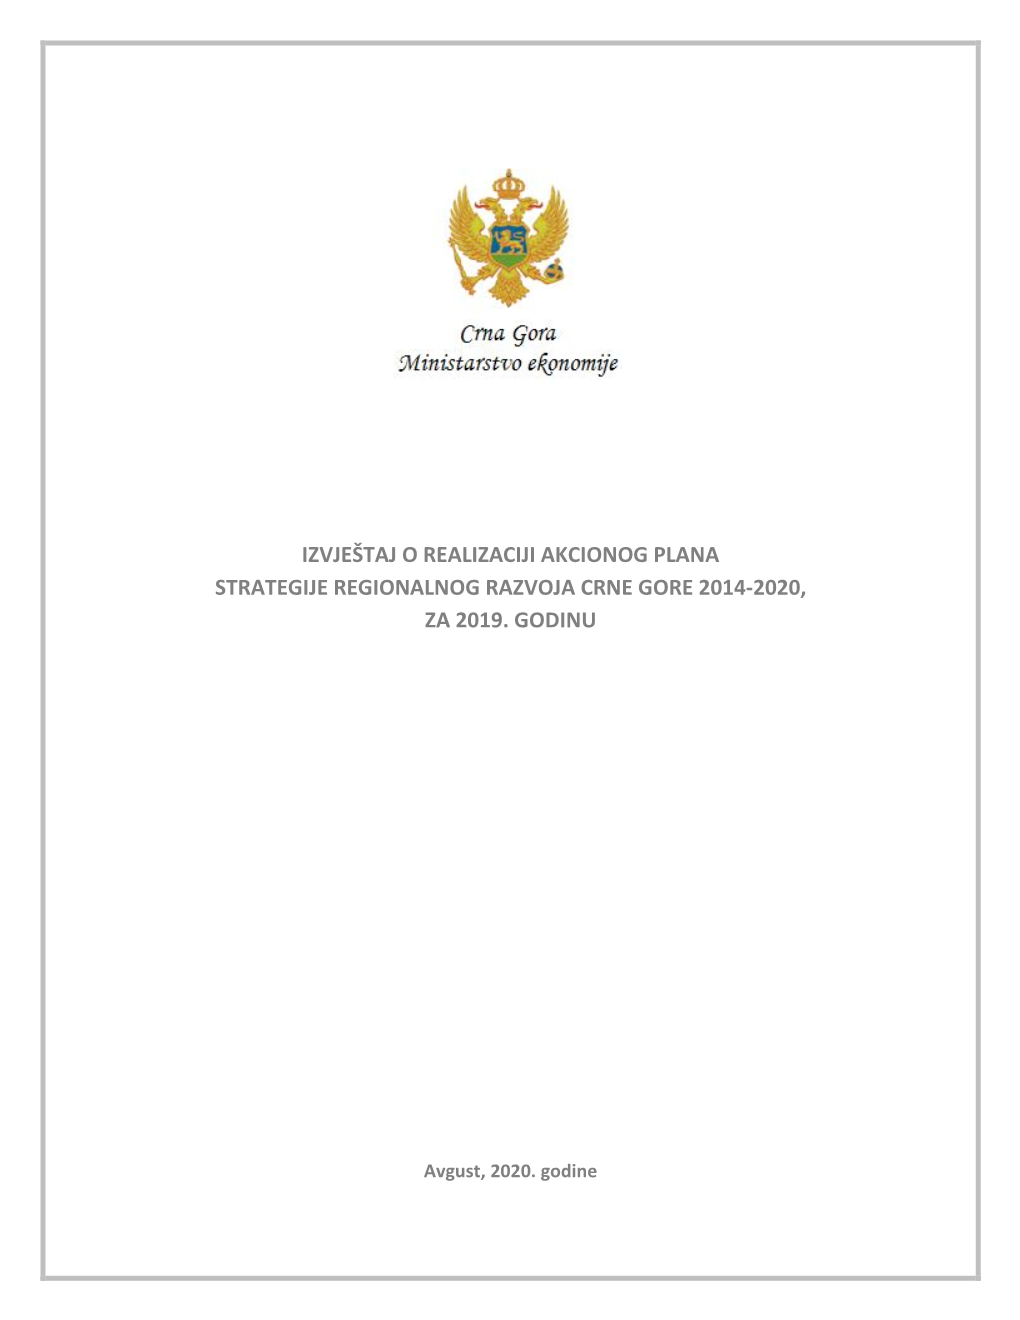 Izvještaj O Realizaciji Akcionog Plana Strategije Regionalnog Razvoja Crne Gore 2014-2020, Za 2019